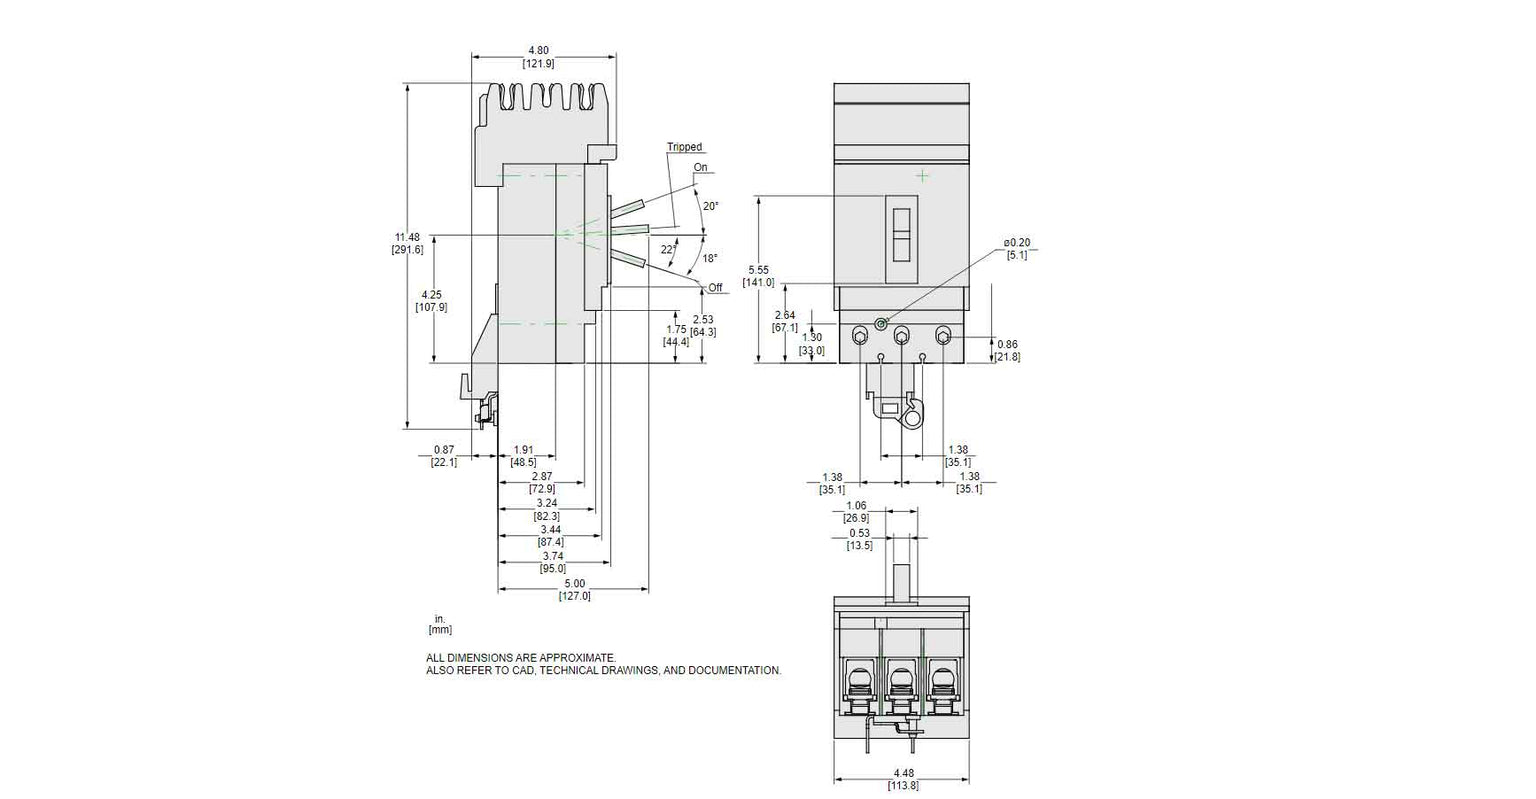 JLA36250U33X - Square D - Molded Case Circuit Breaker